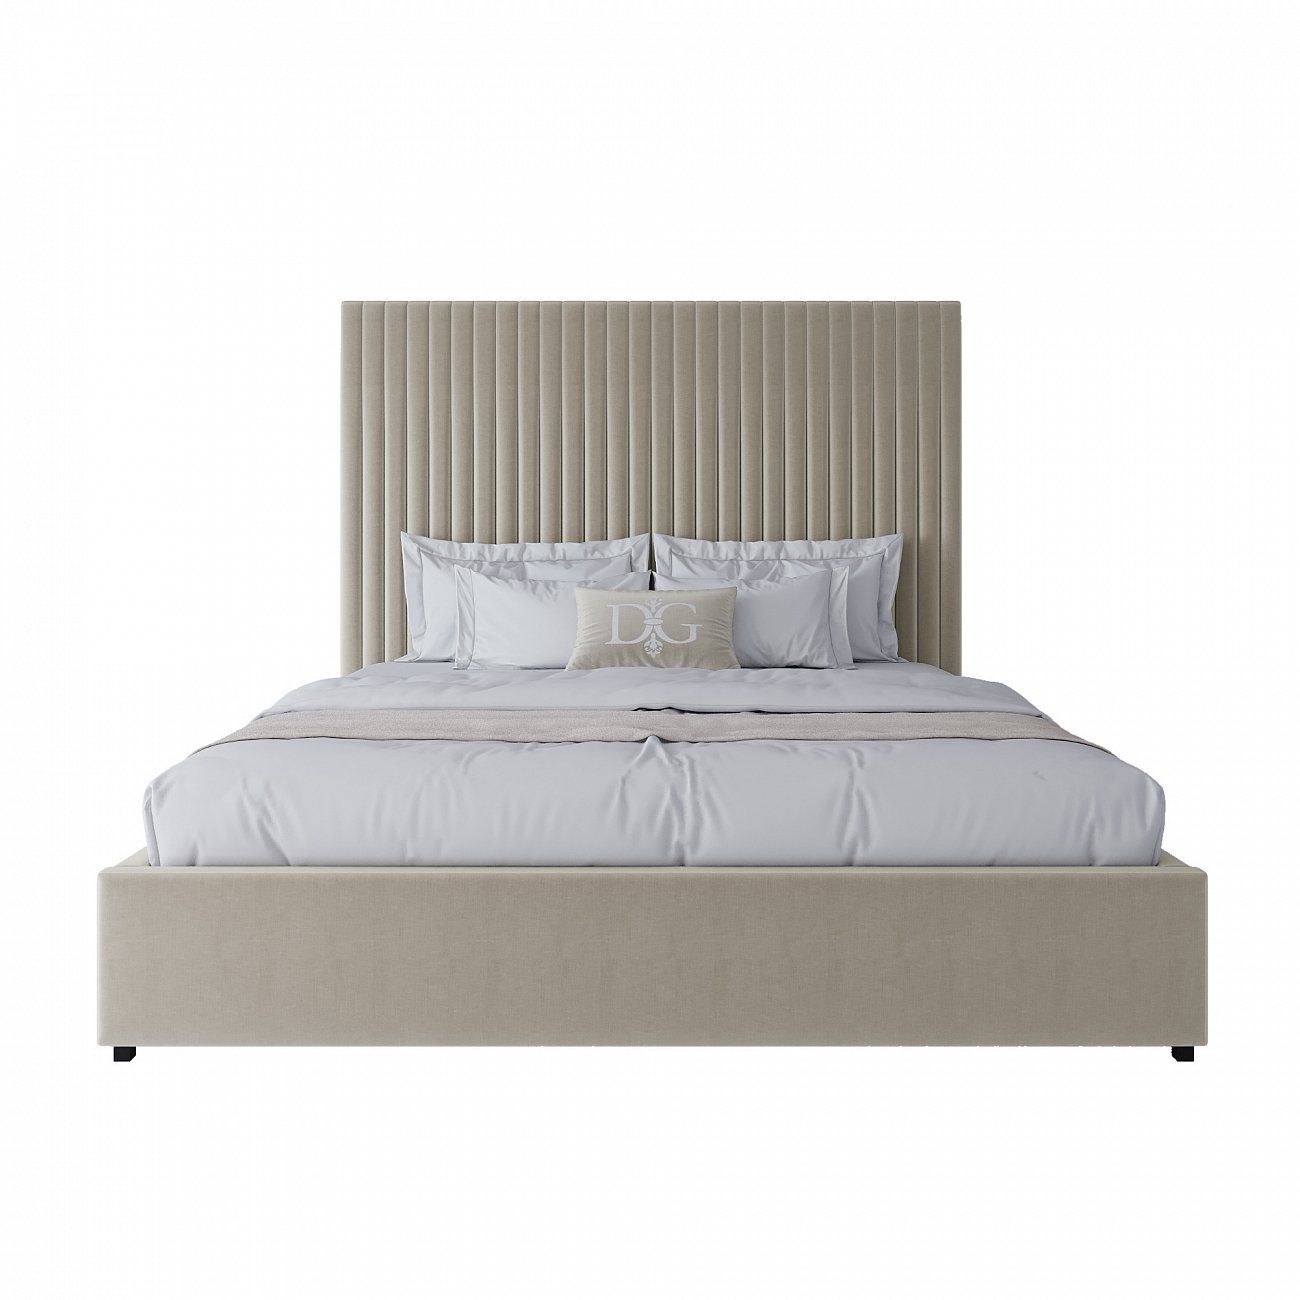 Кровать двуспальная с мягким изголовьем 180х200 см белая Mora